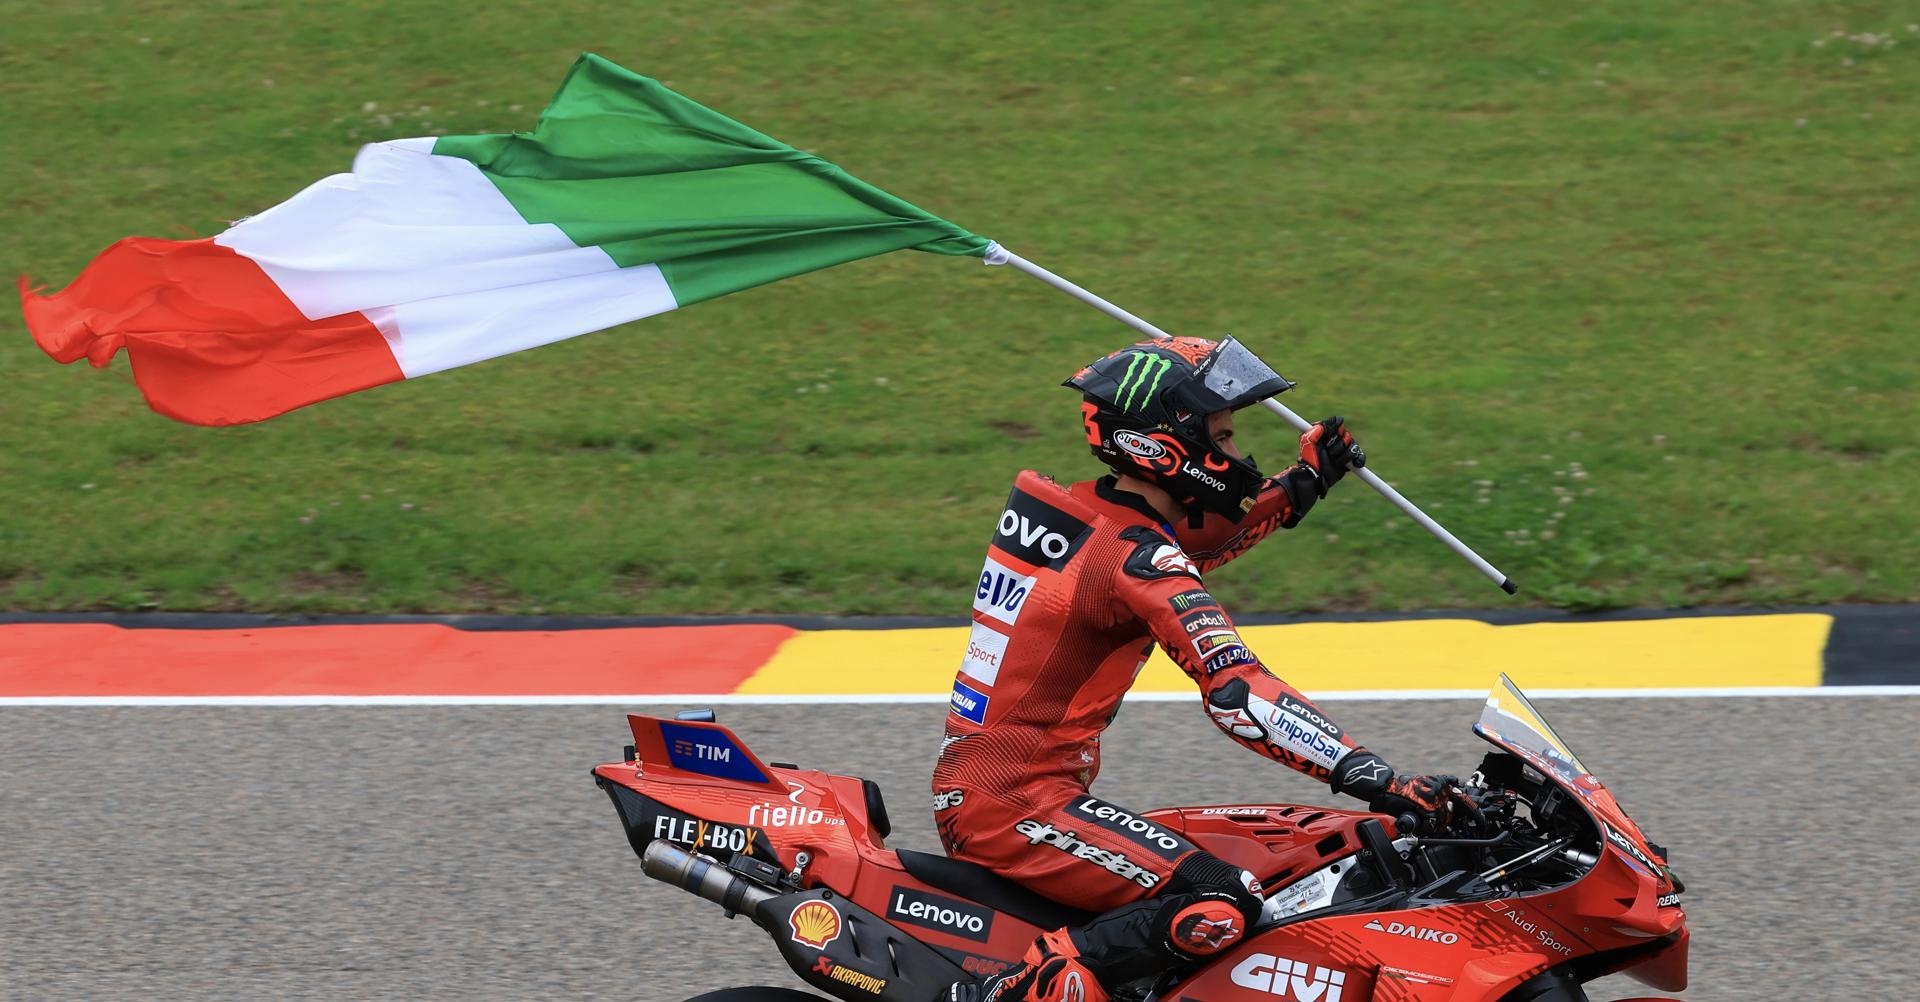 El piloto italiano Pecco Bagnaia (Ducati Lenovo), durante el Gran Premio de Alemania de MotoGP. EFE/EPA/MARTIN DIVISEK